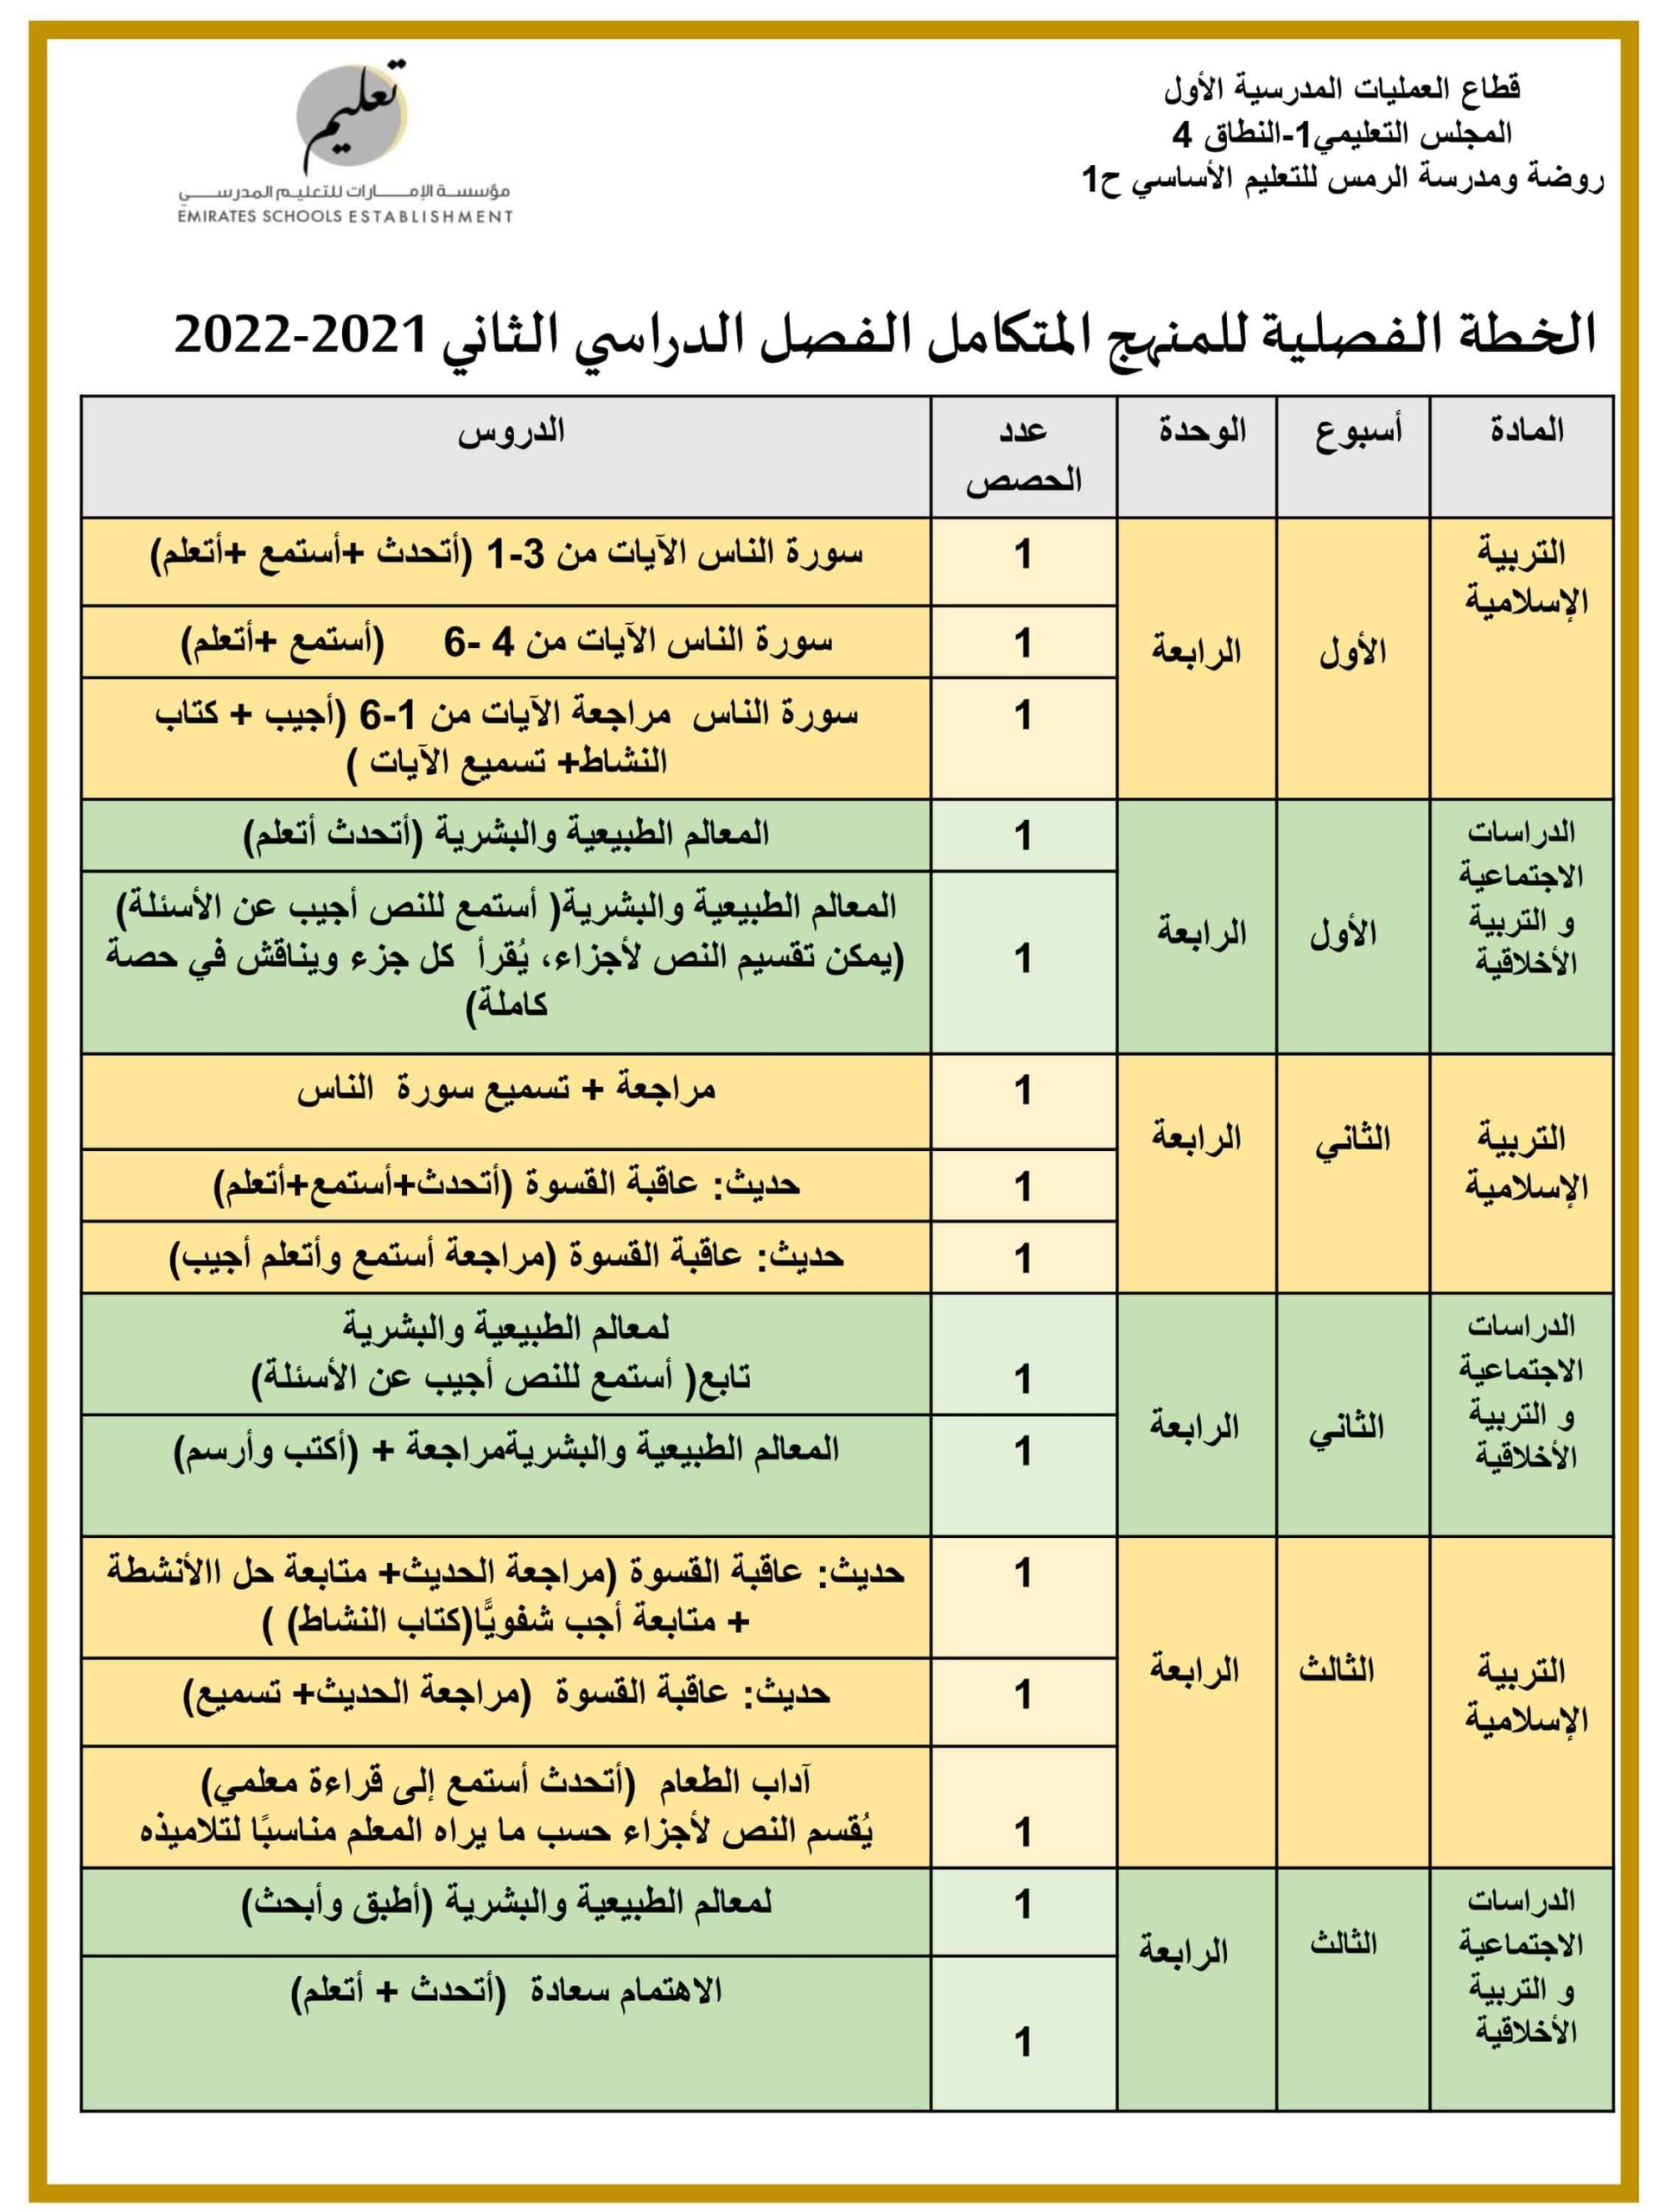 الخطة الفصلية للمنهج المتكامل التربية الإسلامية والدراسات الإجتماعية والتربية الوطنية الصف الأول الفصل الدراسي الثاني 2021 - 2022